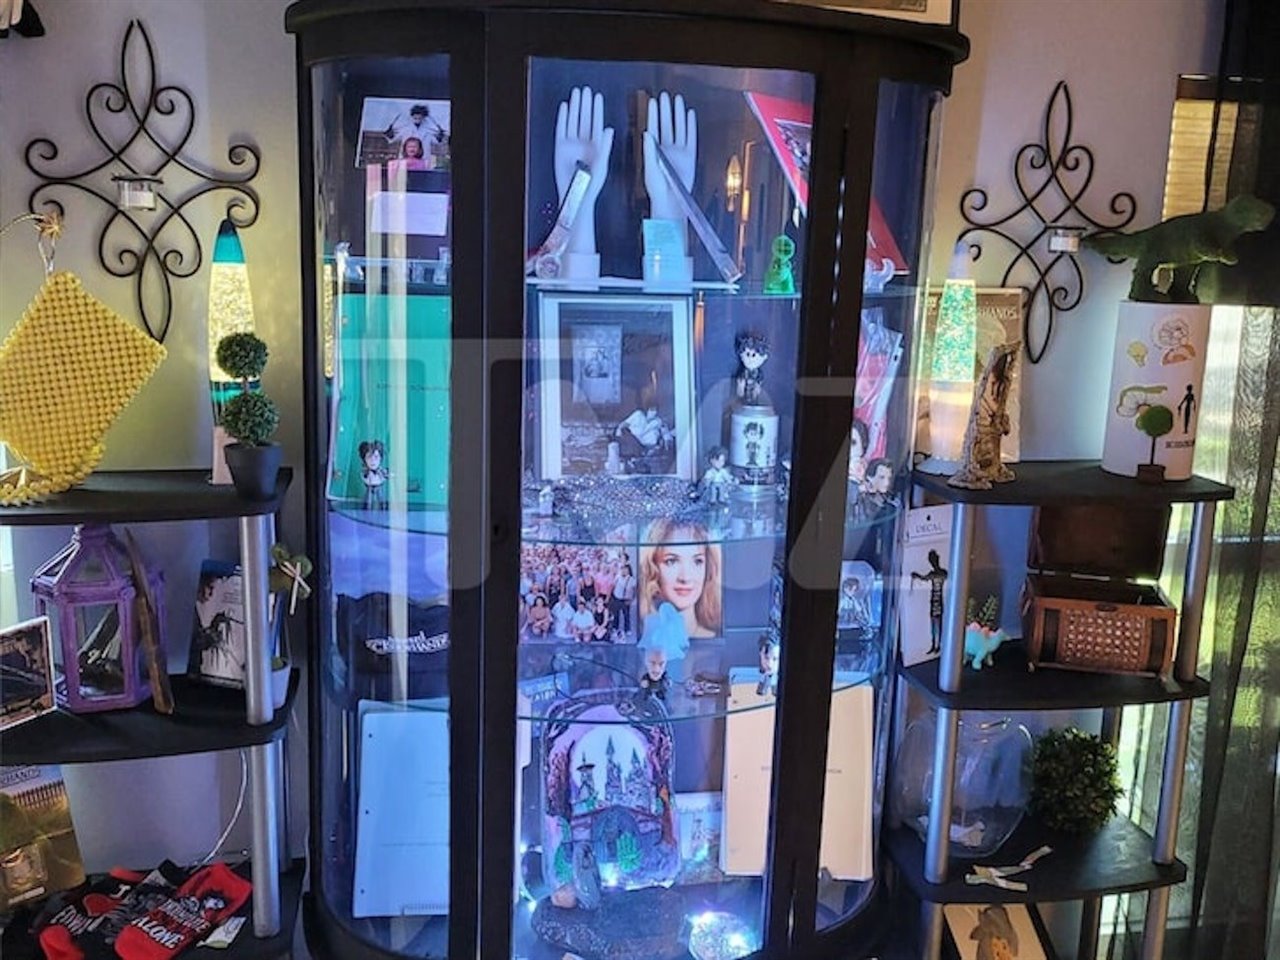 Los objetos mostrados son parte de la colección personal de Joey y donaciones de otros fans.